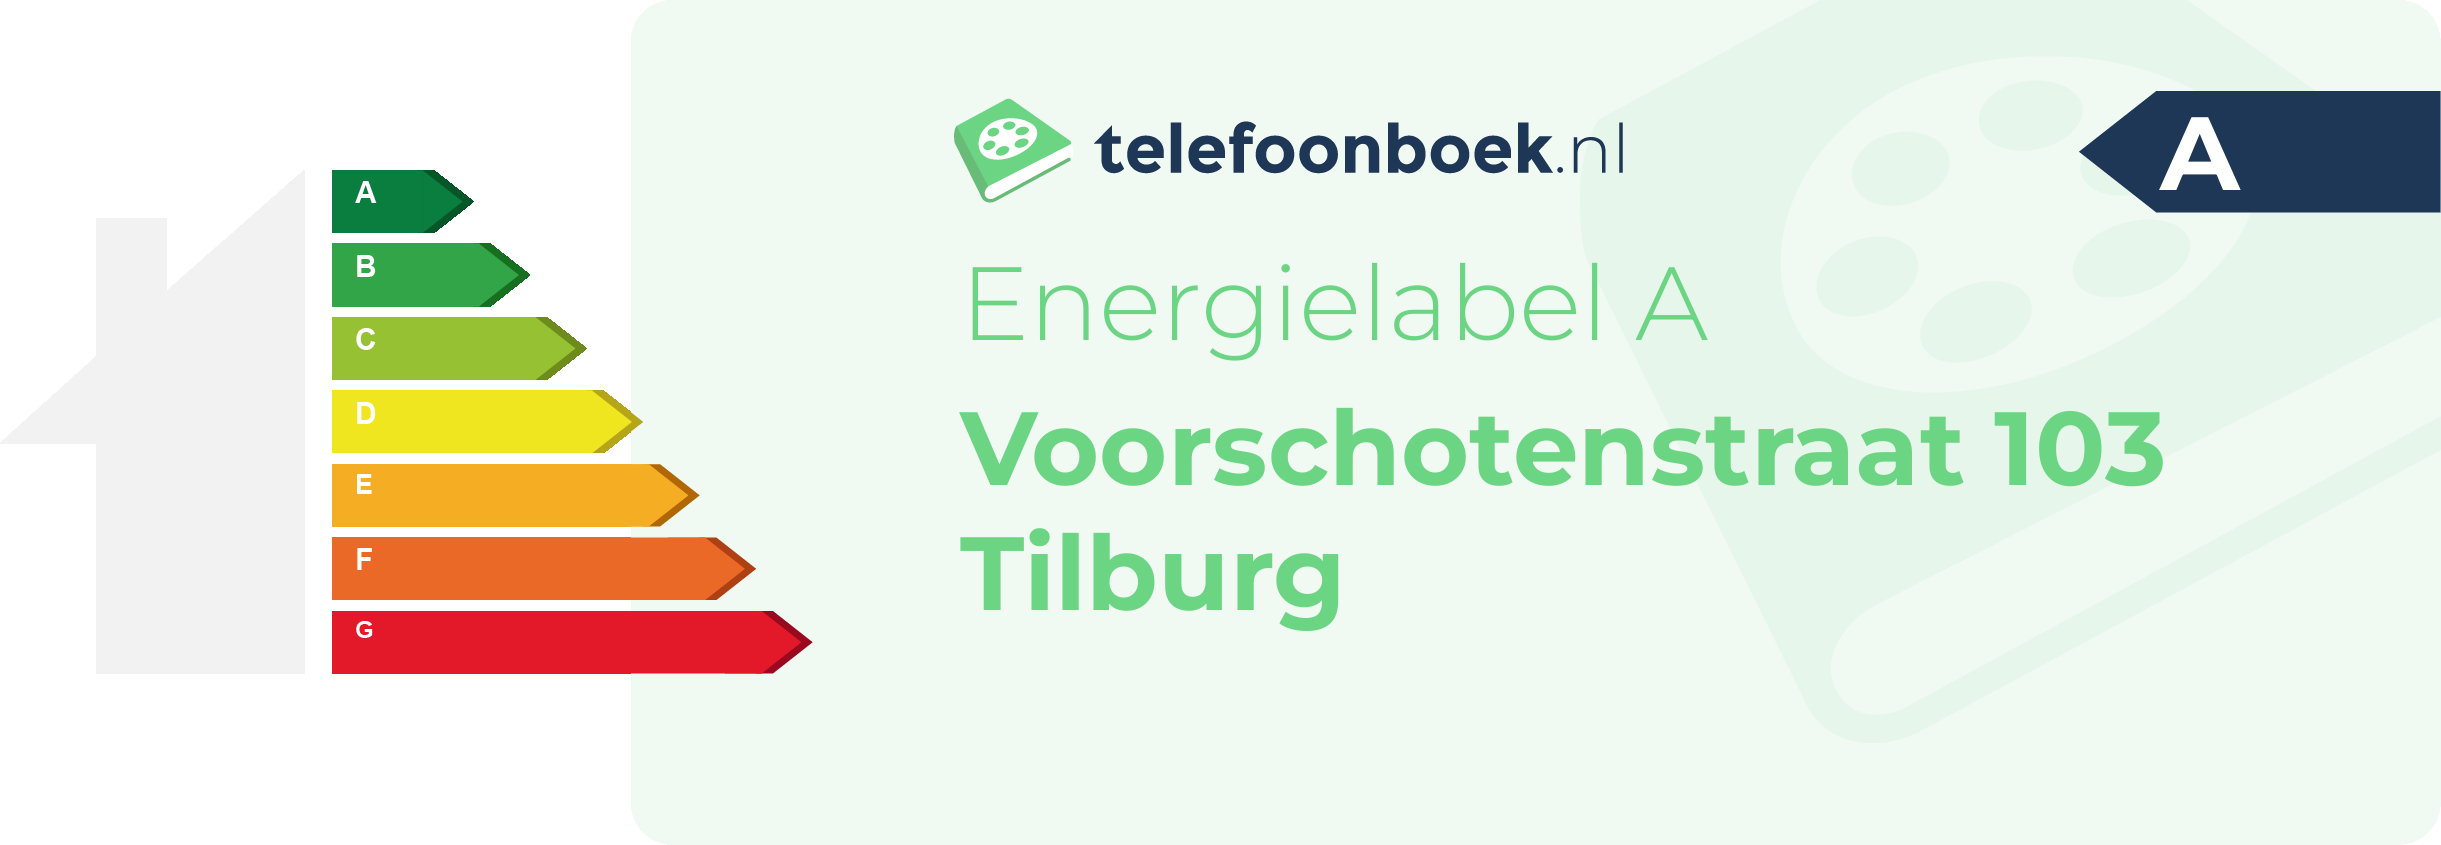 Energielabel Voorschotenstraat 103 Tilburg